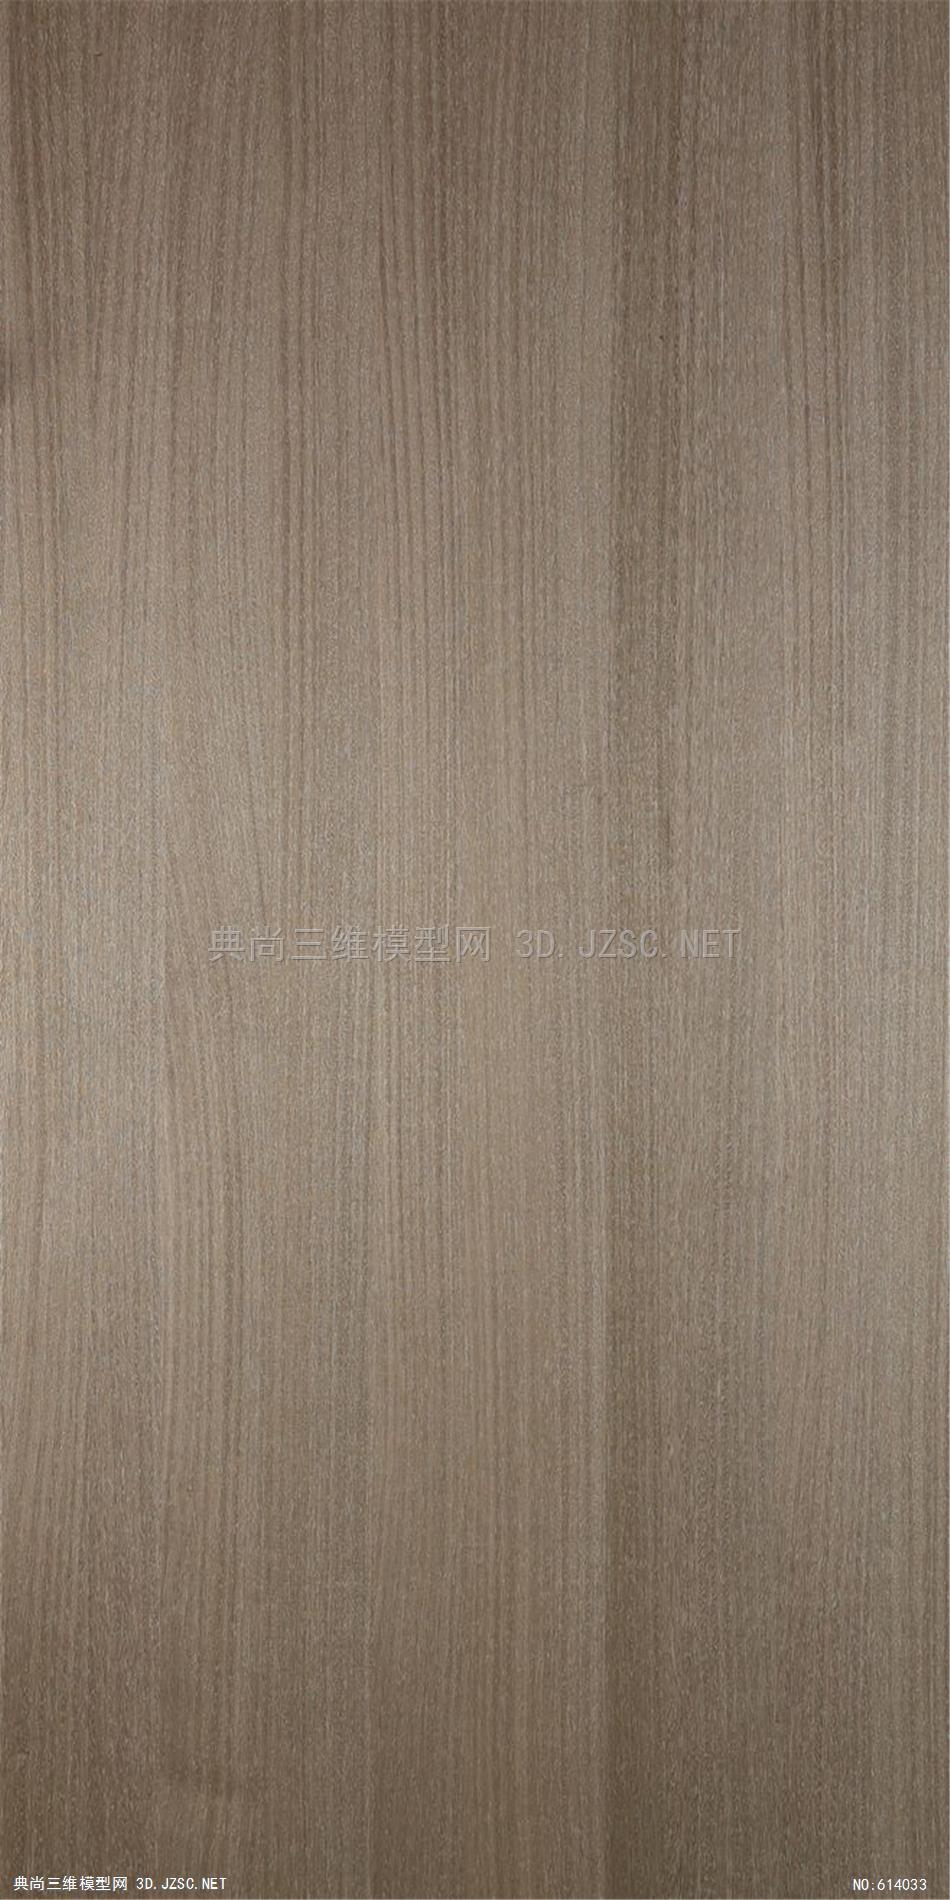 木饰面 木纹 木材 高清材质贴图 (221)材质贴图